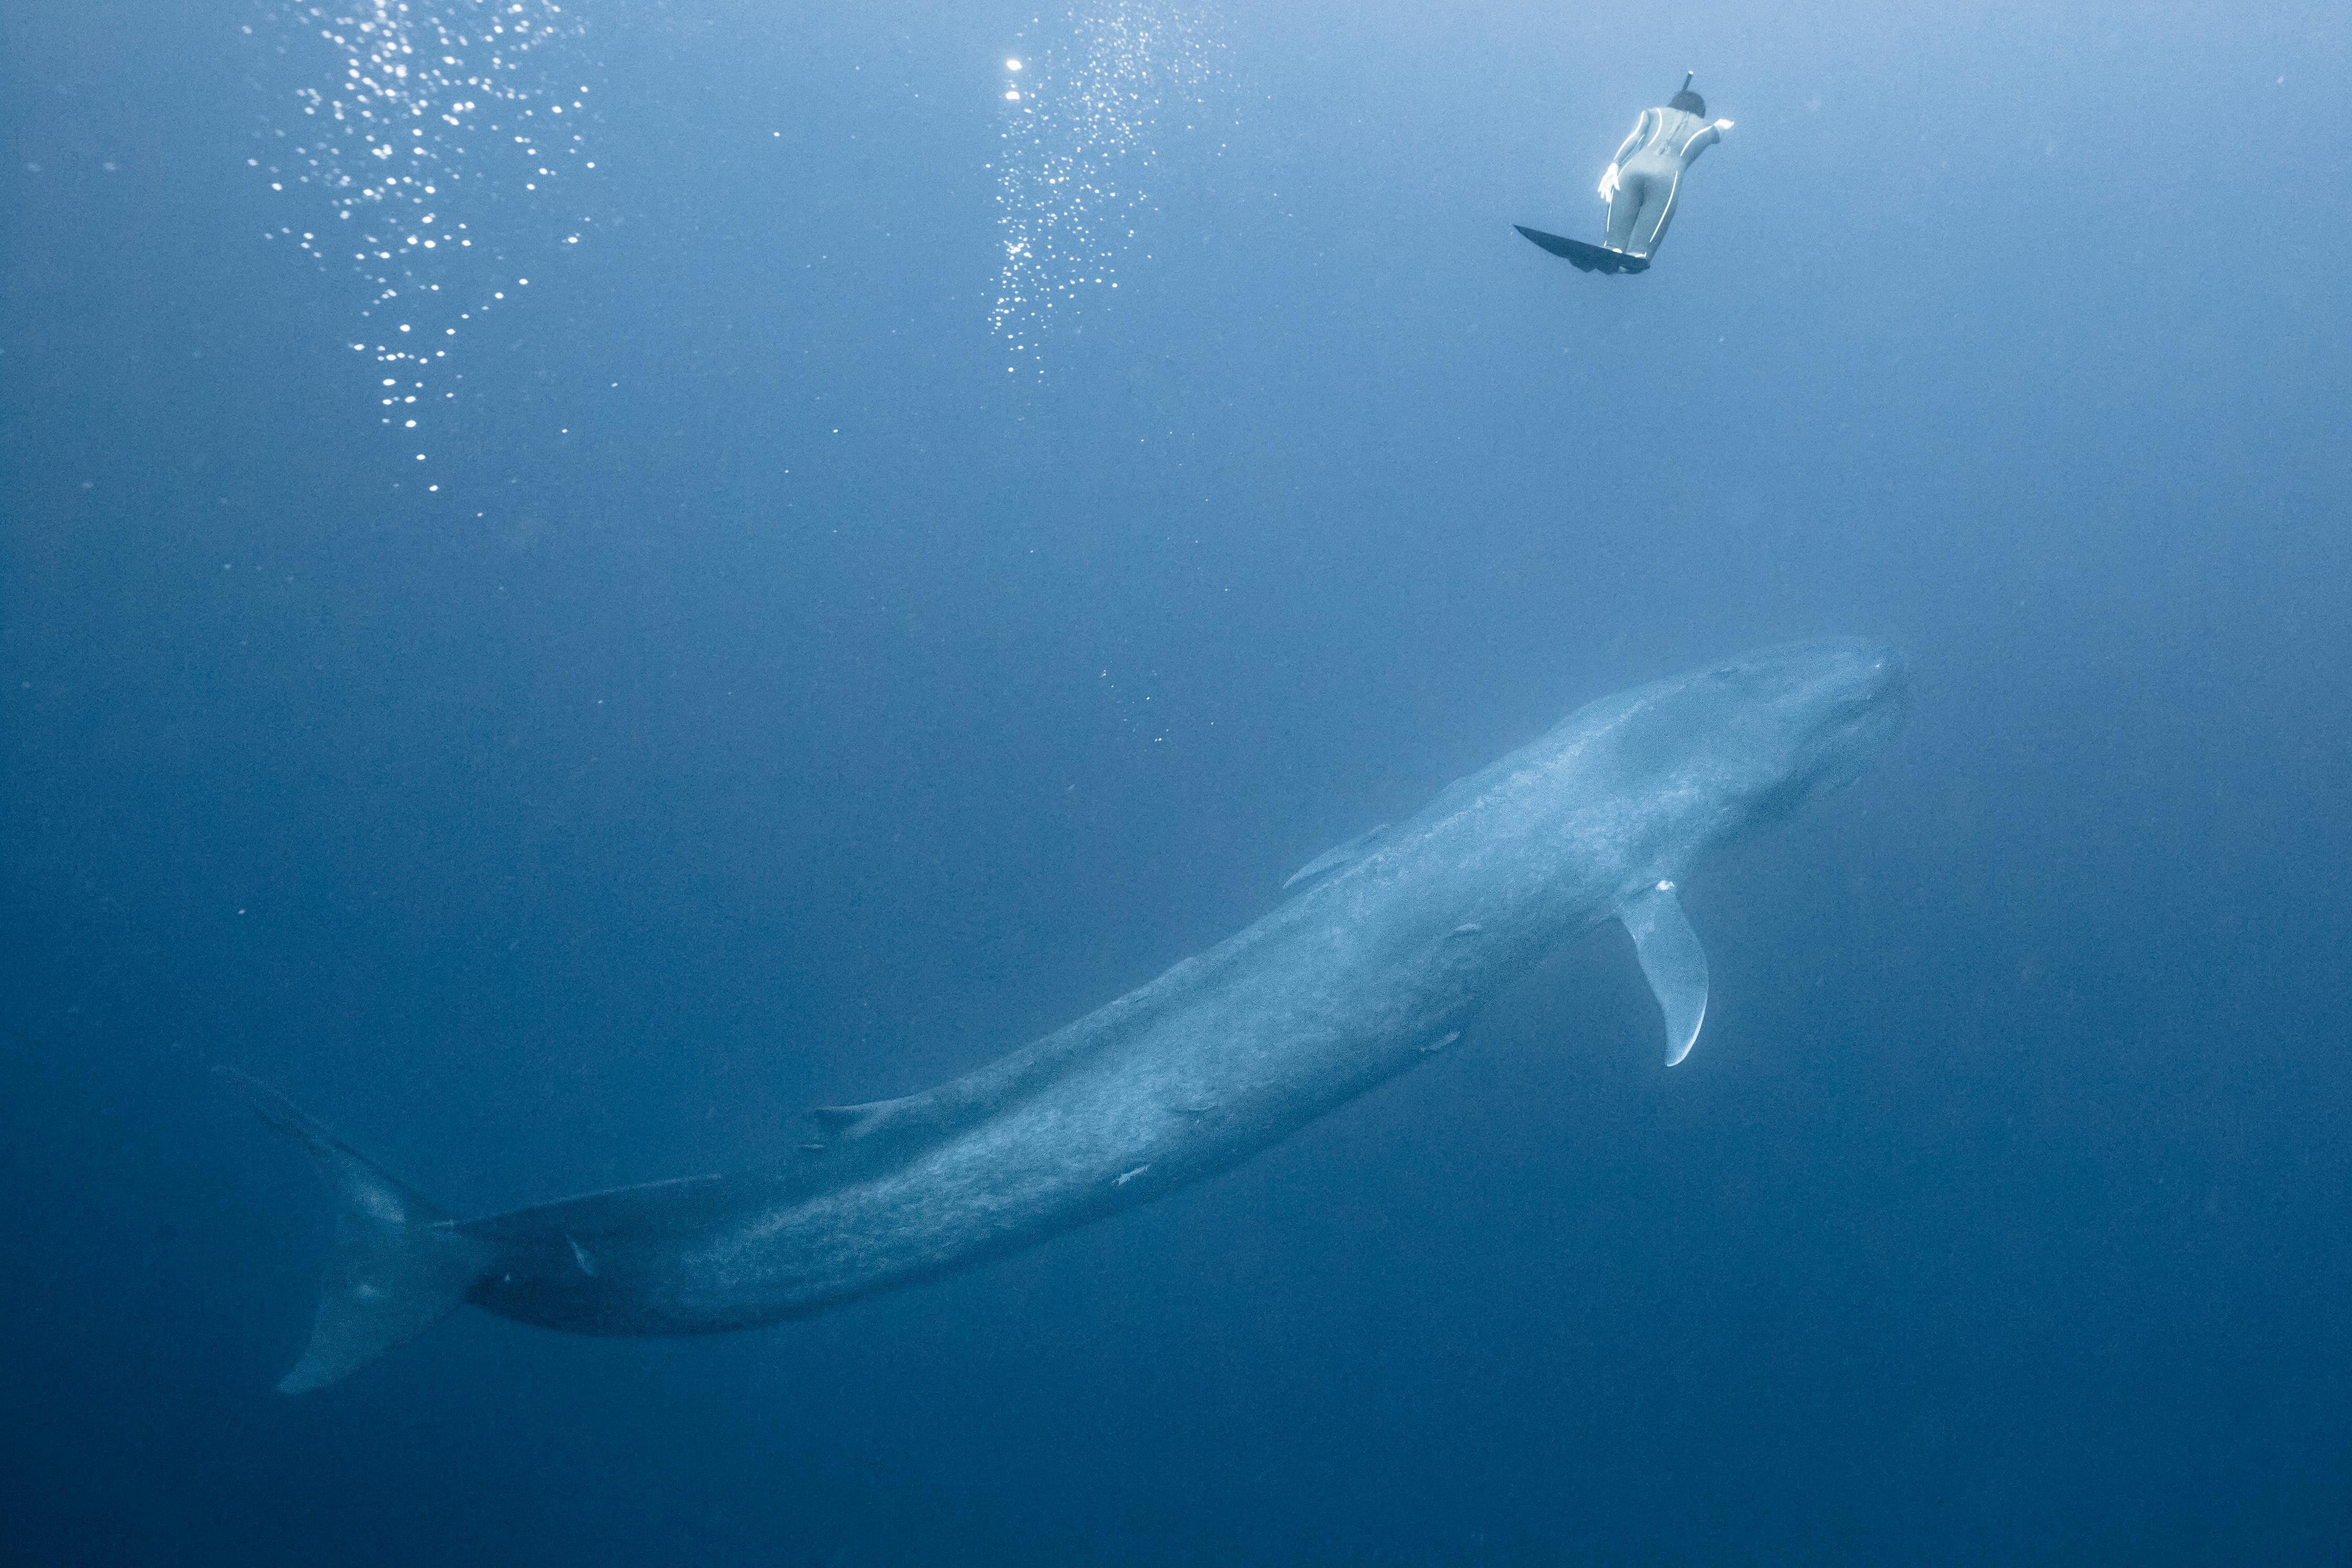 シロ ナガスクジラ vs シャチ